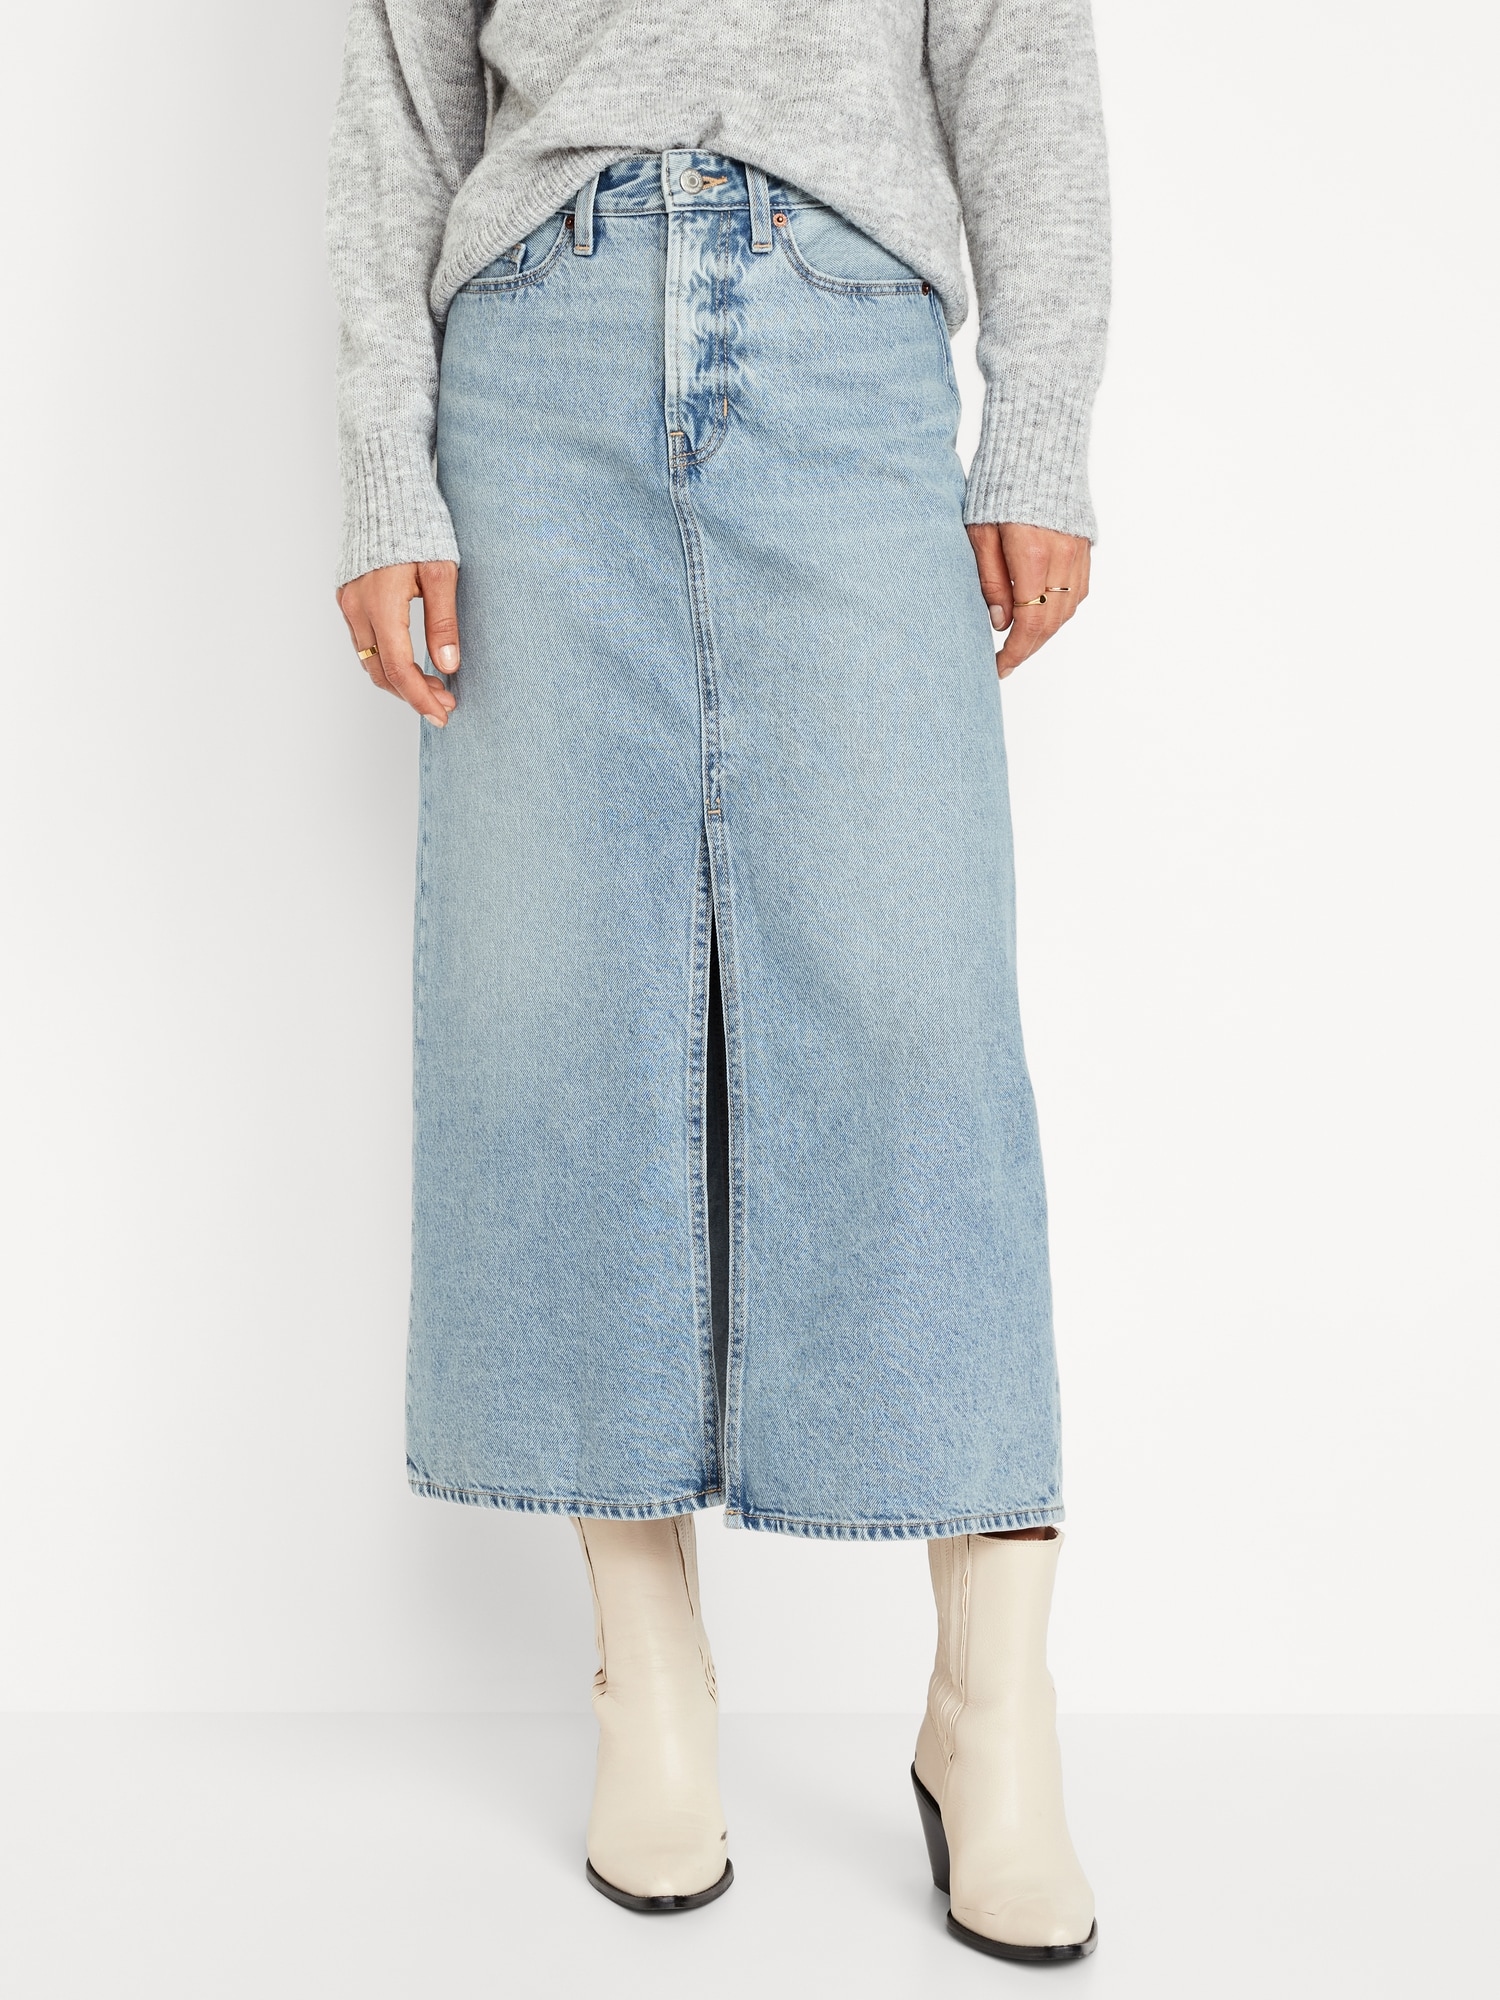 ONLY ONLLINETTE LONG SKIRT - Maxi skirt - dark blue denim/dark